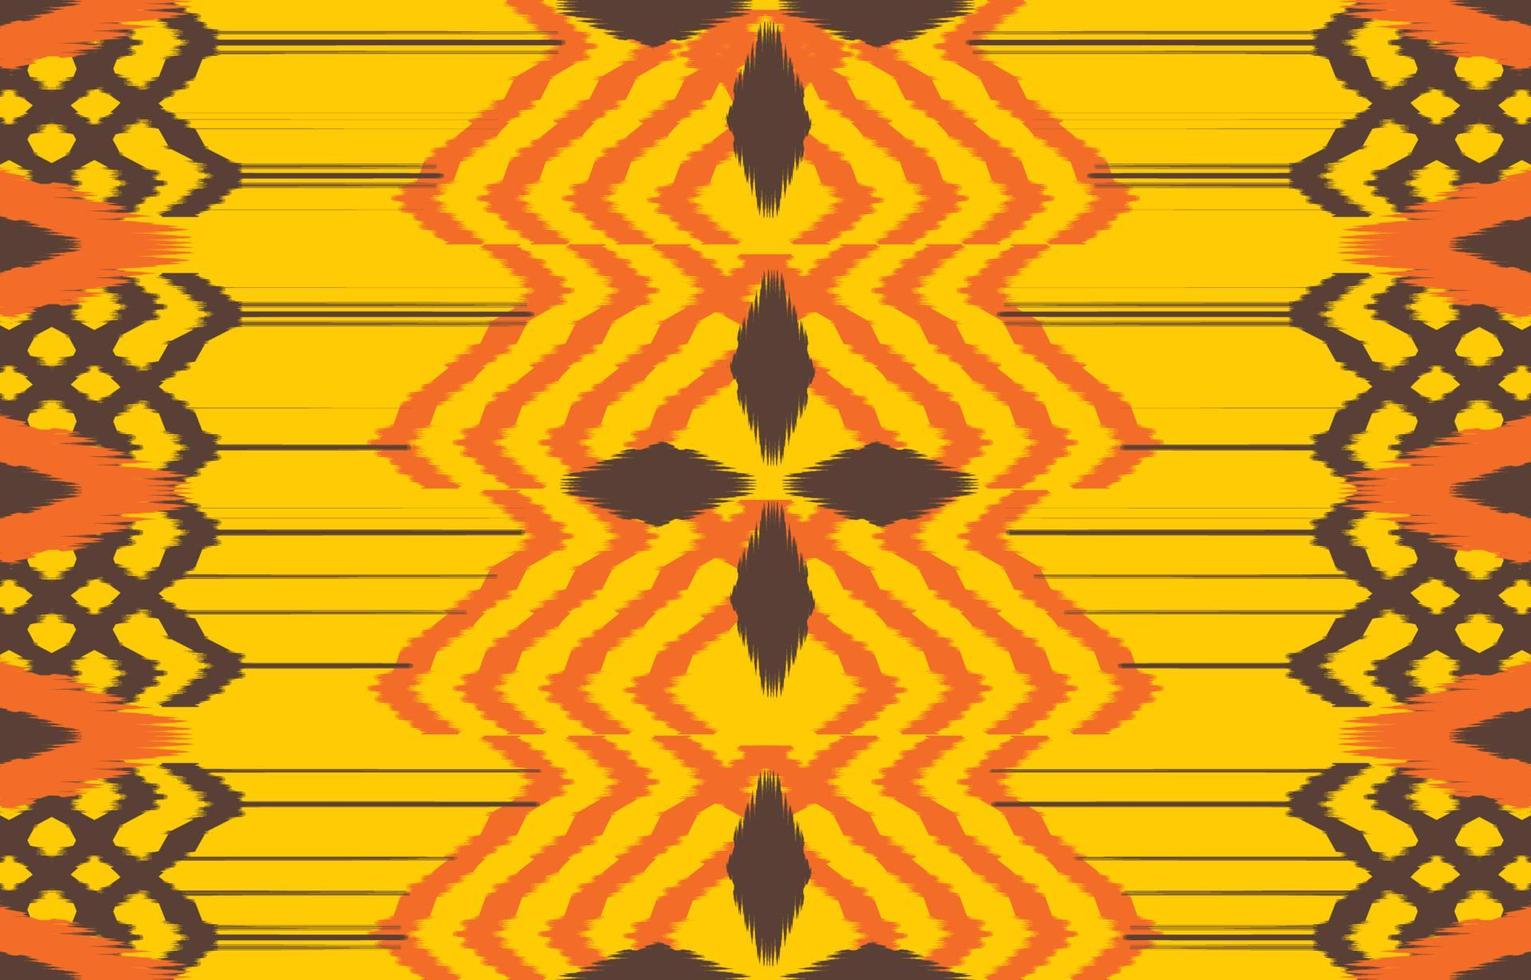 ikat etnische ontwerp achtergrond. naadloos ikat geel patroon in stammen, volksborduurwerk abstracte kunst. Azteekse geometrische kunst ornament print.design voor tapijt, behang, kleding, inwikkeling, stof, hoes vector